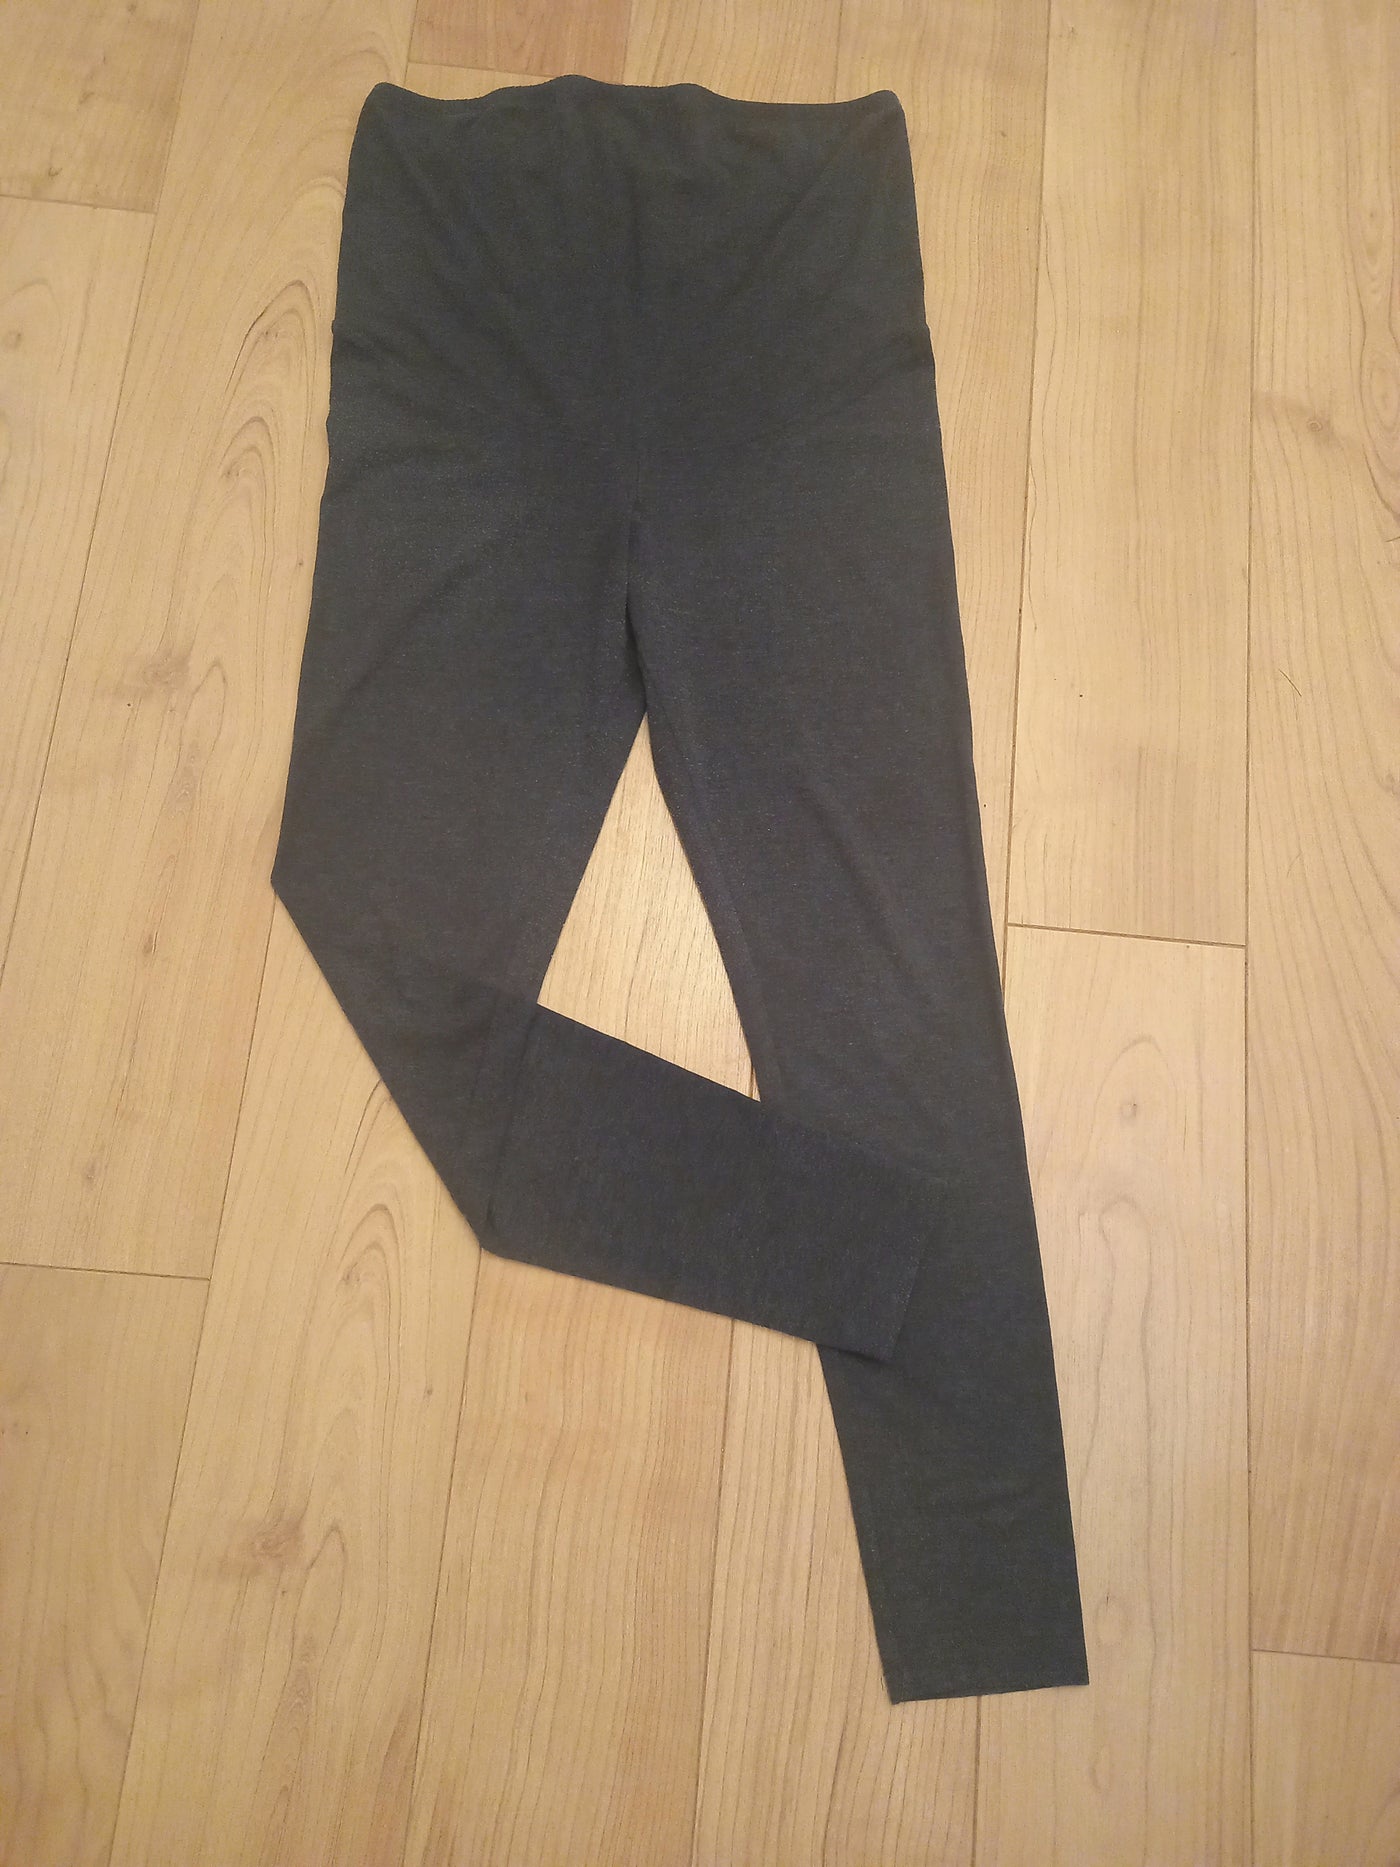 H&M Mama dark grey overbump leggings - Size L (Approx UK 12)